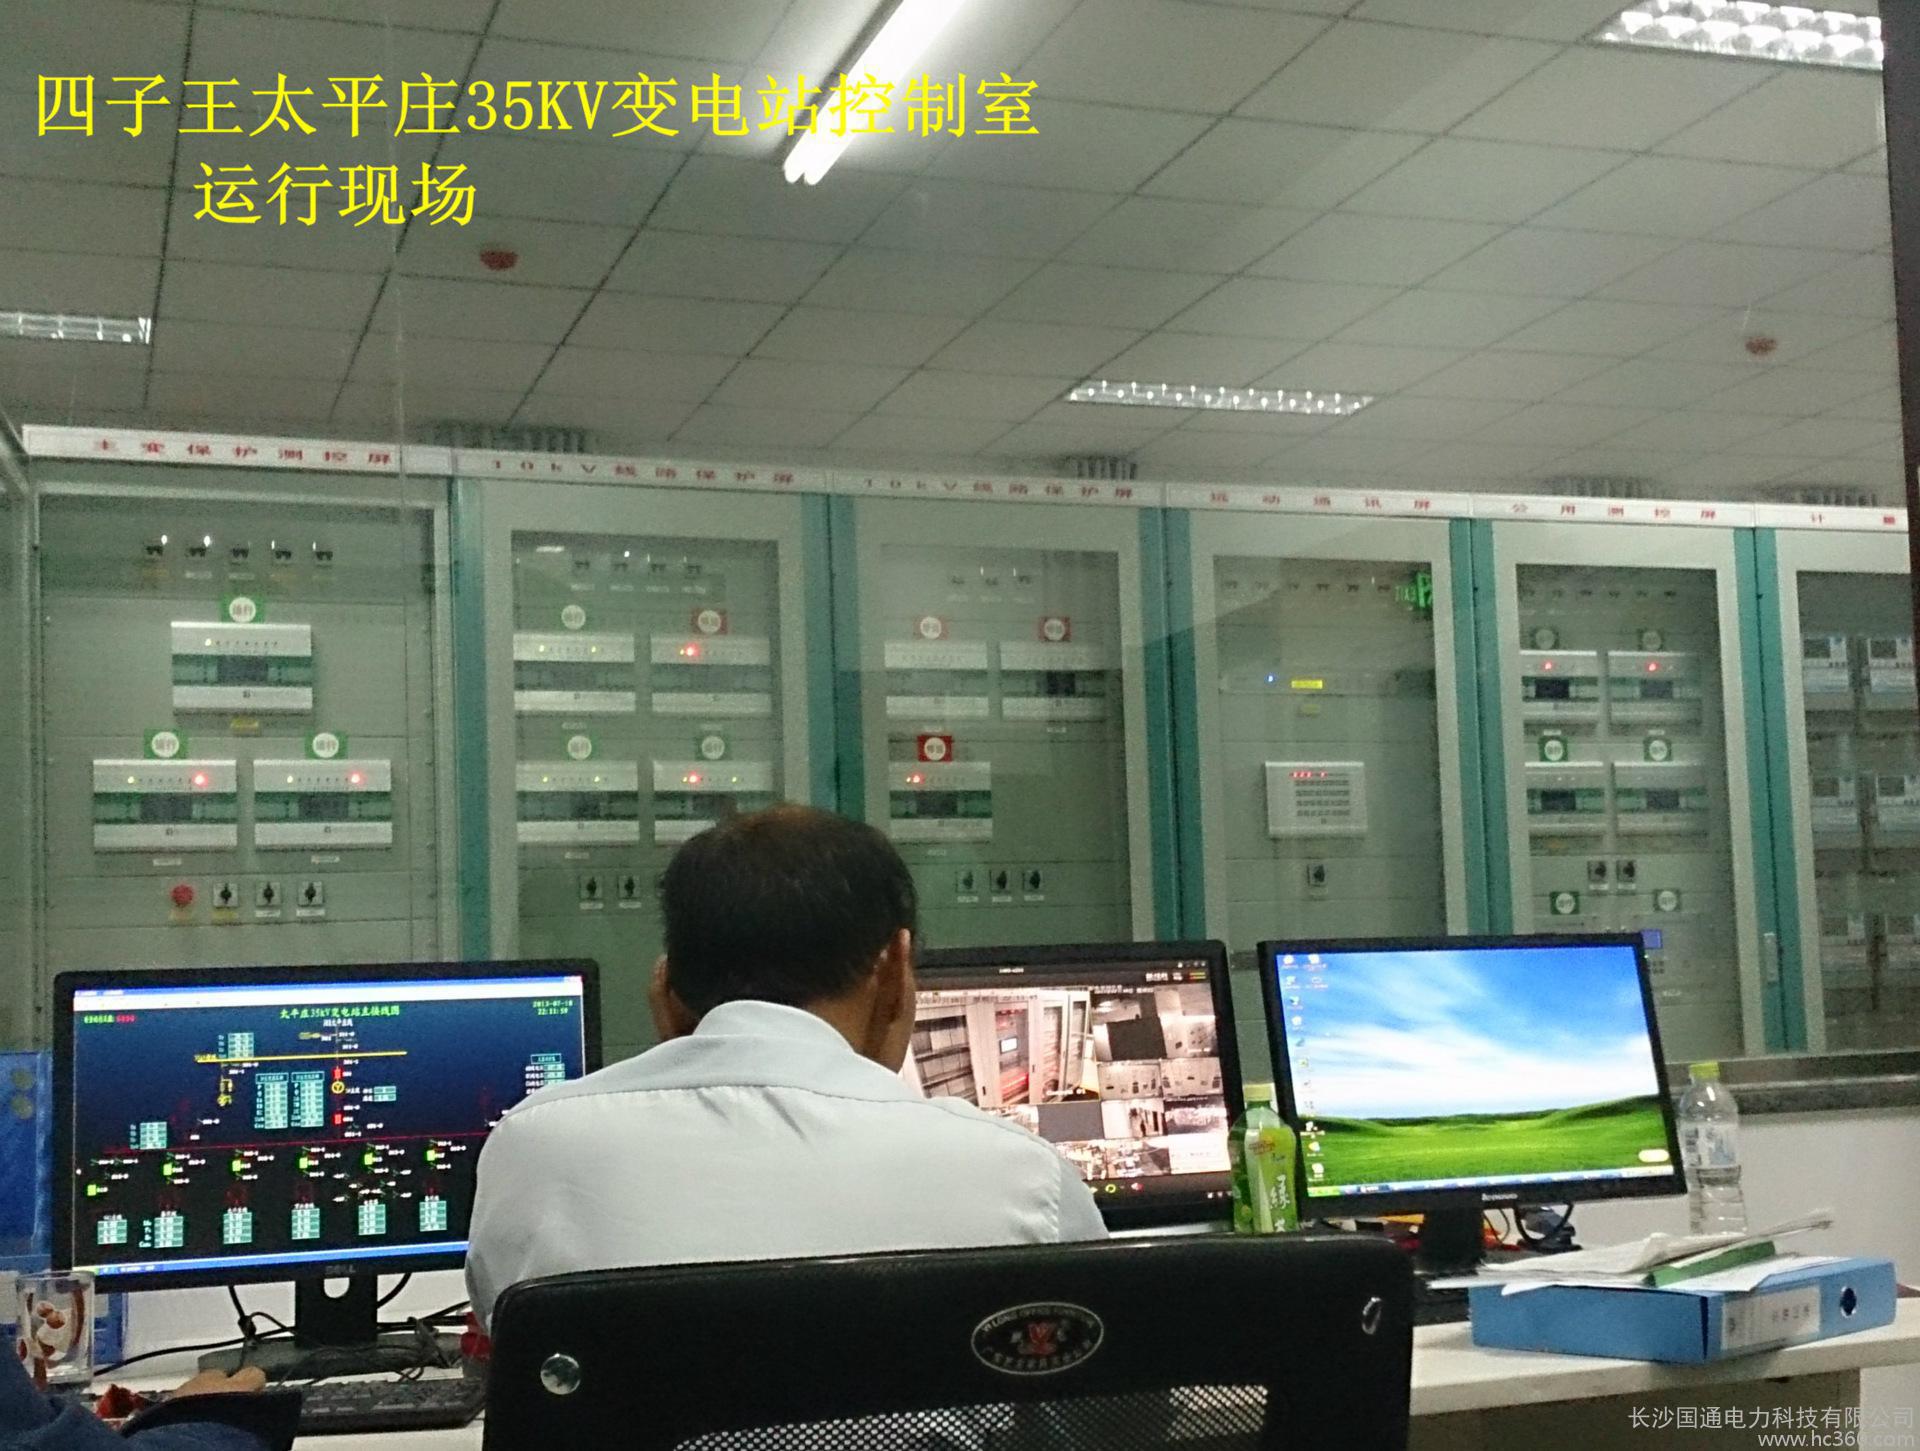 【专业】承接变电站自动化项目 自动化系统 西门子PLC 成套